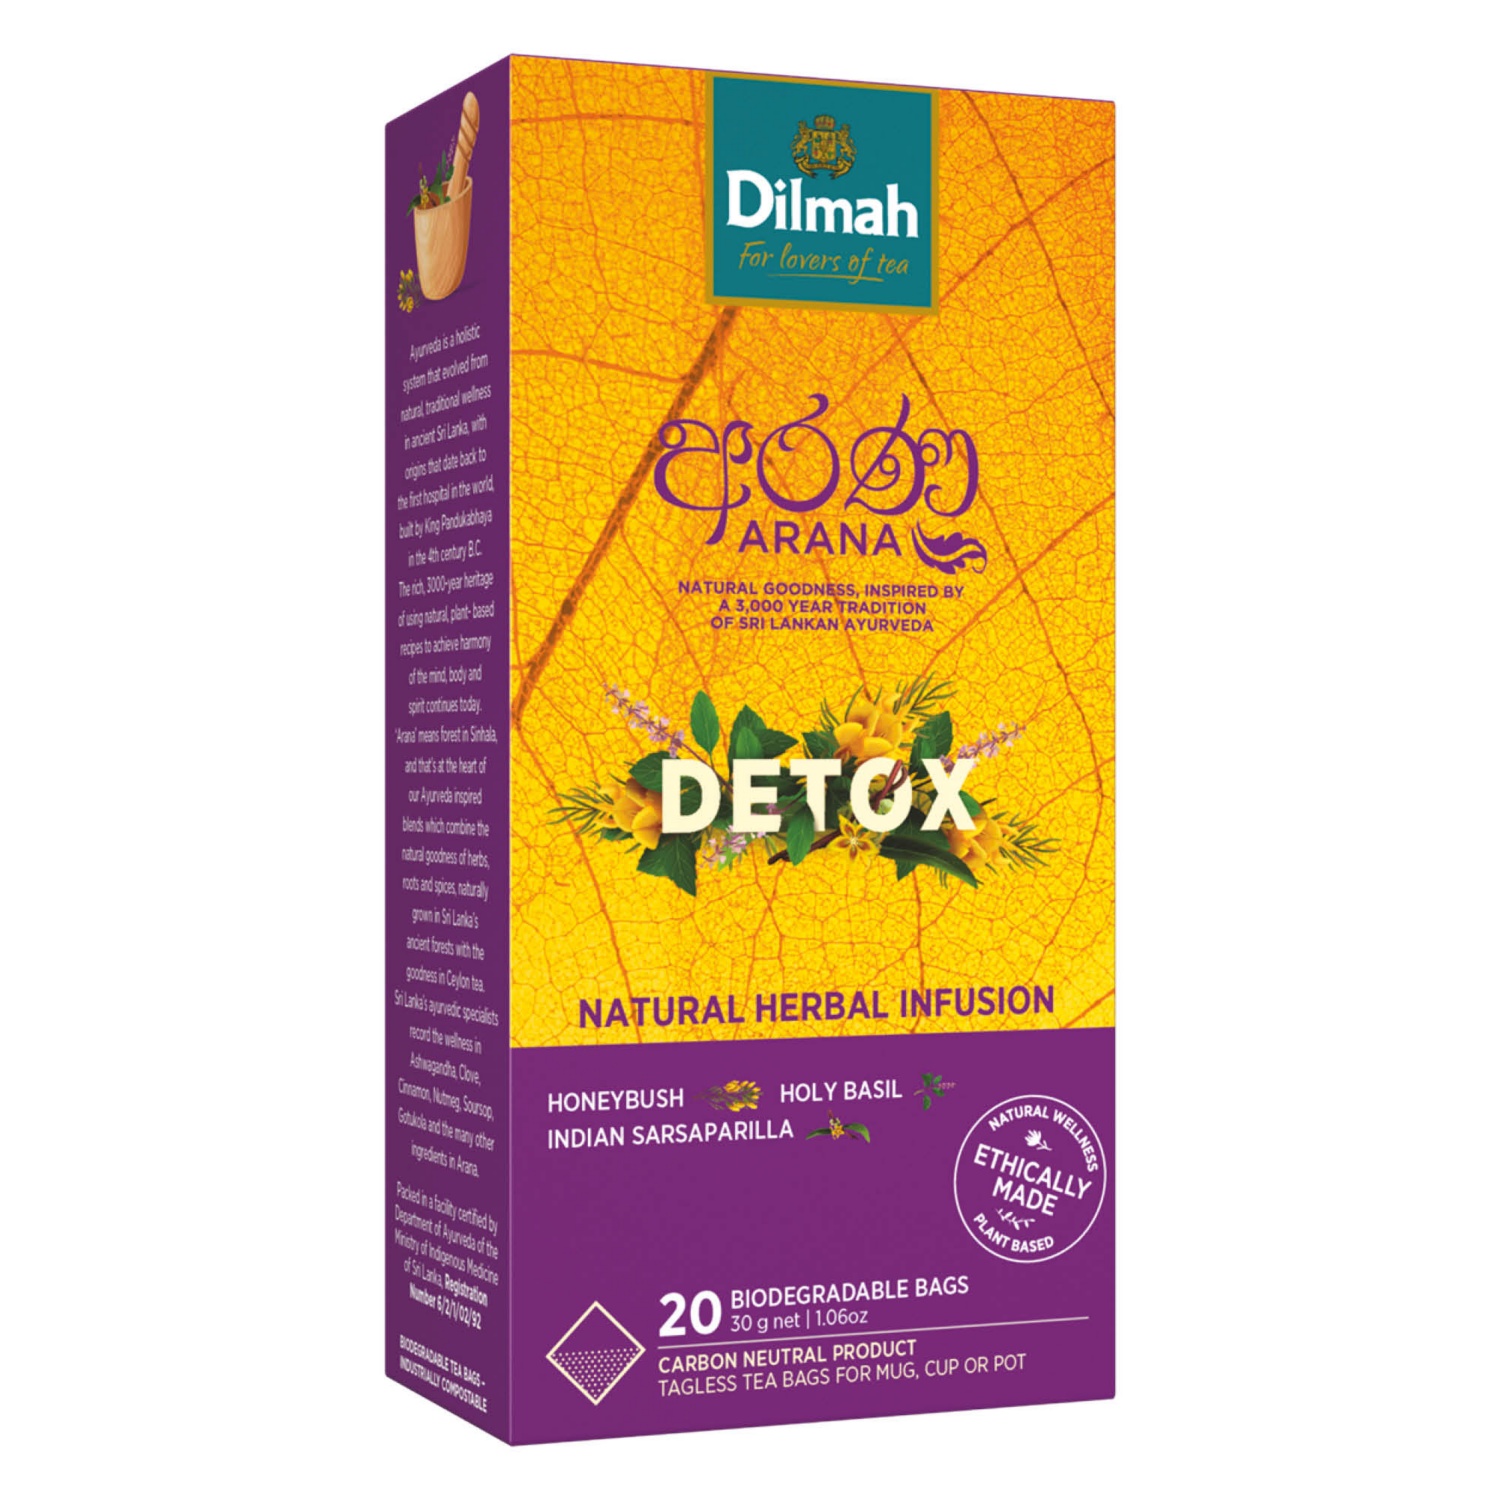 DILMAH Arana Tea, Detox